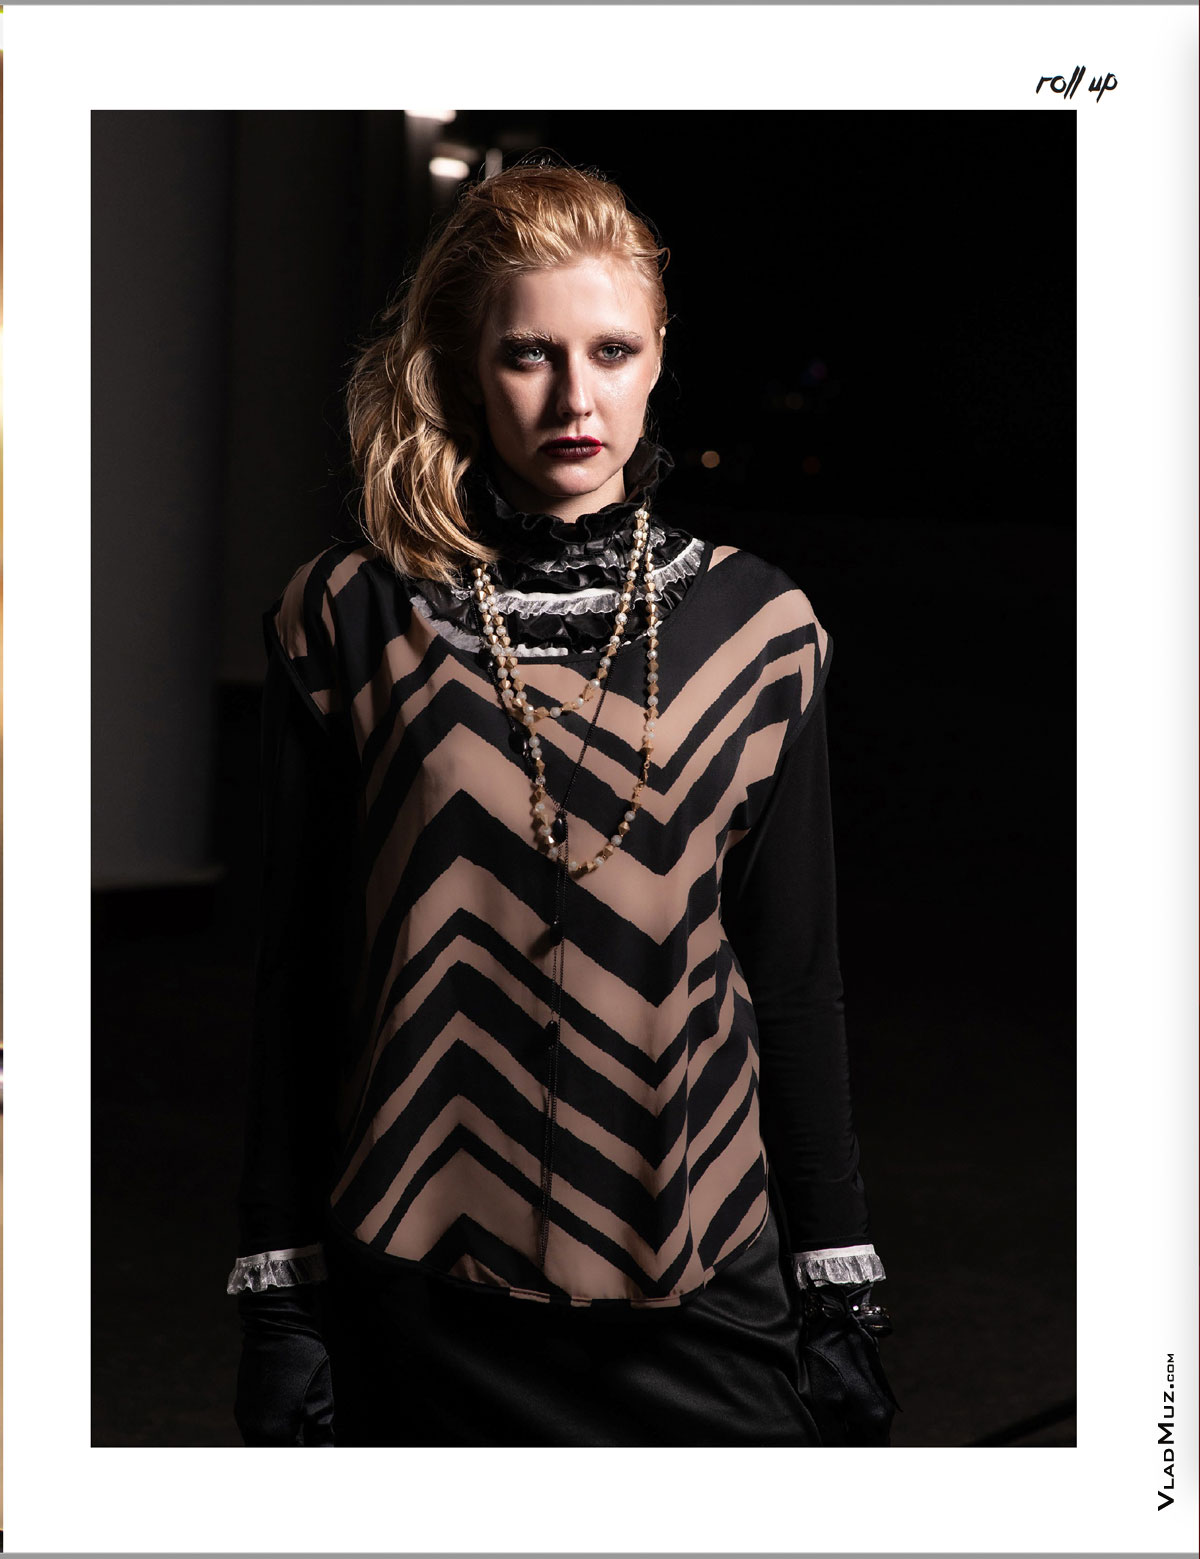 Поясное фото девушки-модели на темном фоне города из серии модных фотографий для журнала Roll Up Magazine